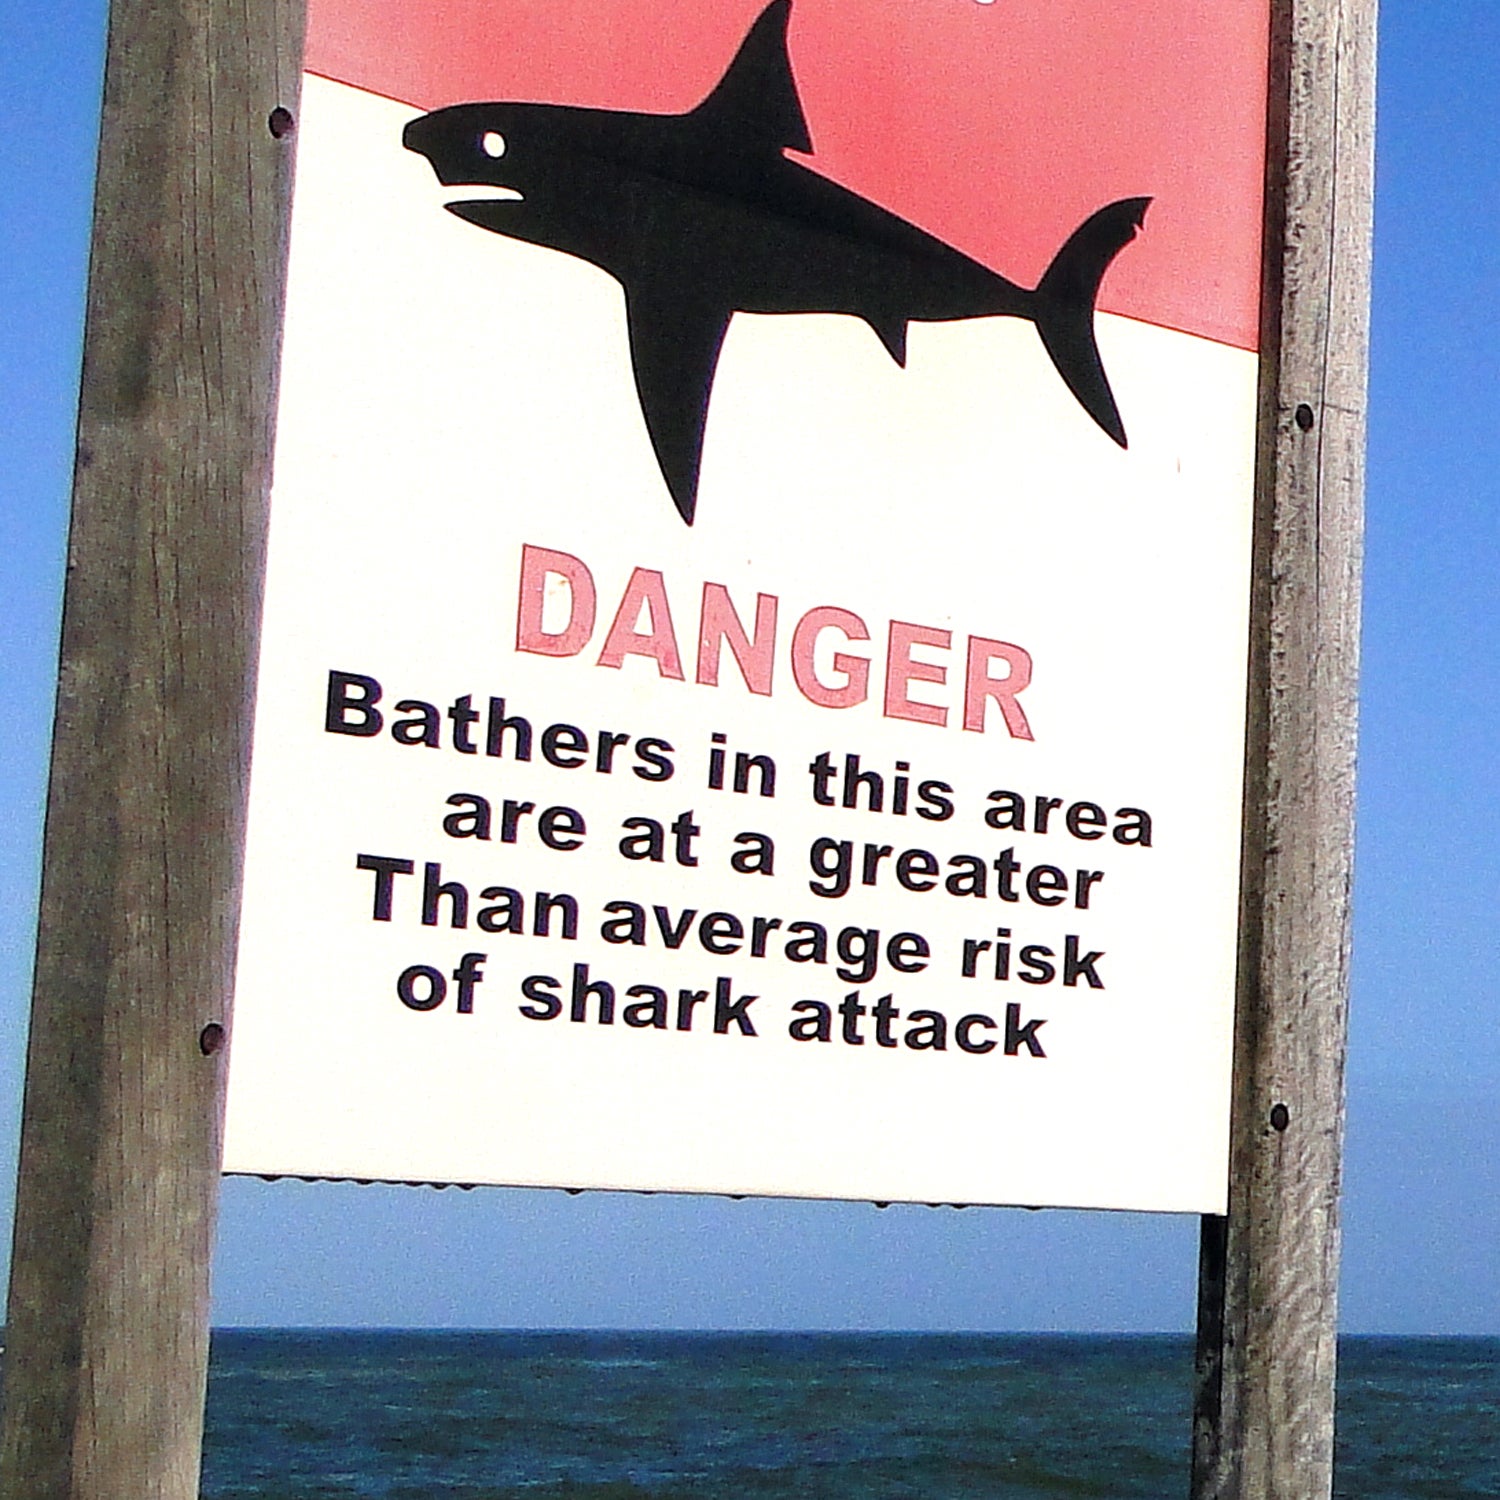 The Shark Attacks In North Carolina, Explained